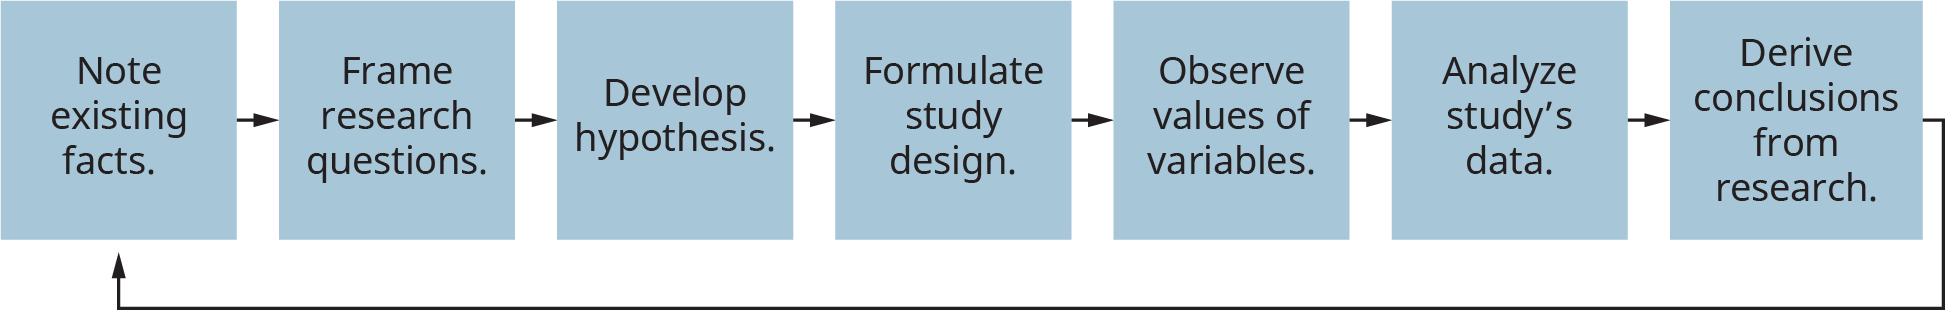 Un diagrama ilustra el modelo del proceso de investigación empírica.